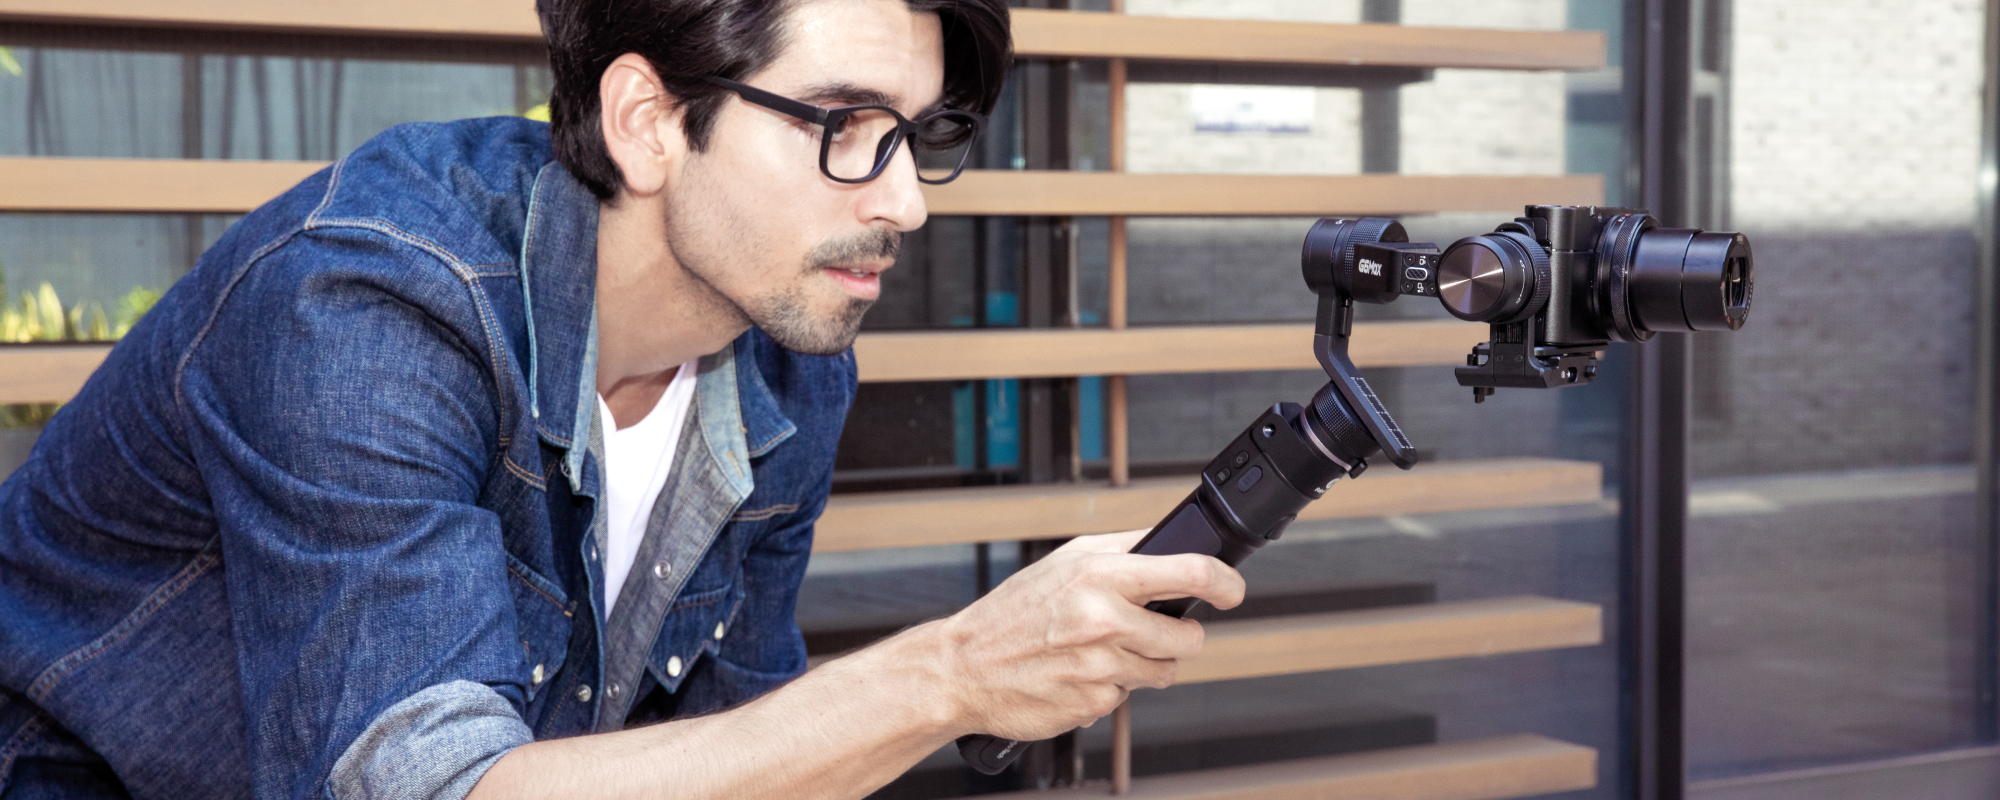 Mężczyzna filmuje swoim aparatem cyfrowym umieszczonym na gimbalu G6 MAX